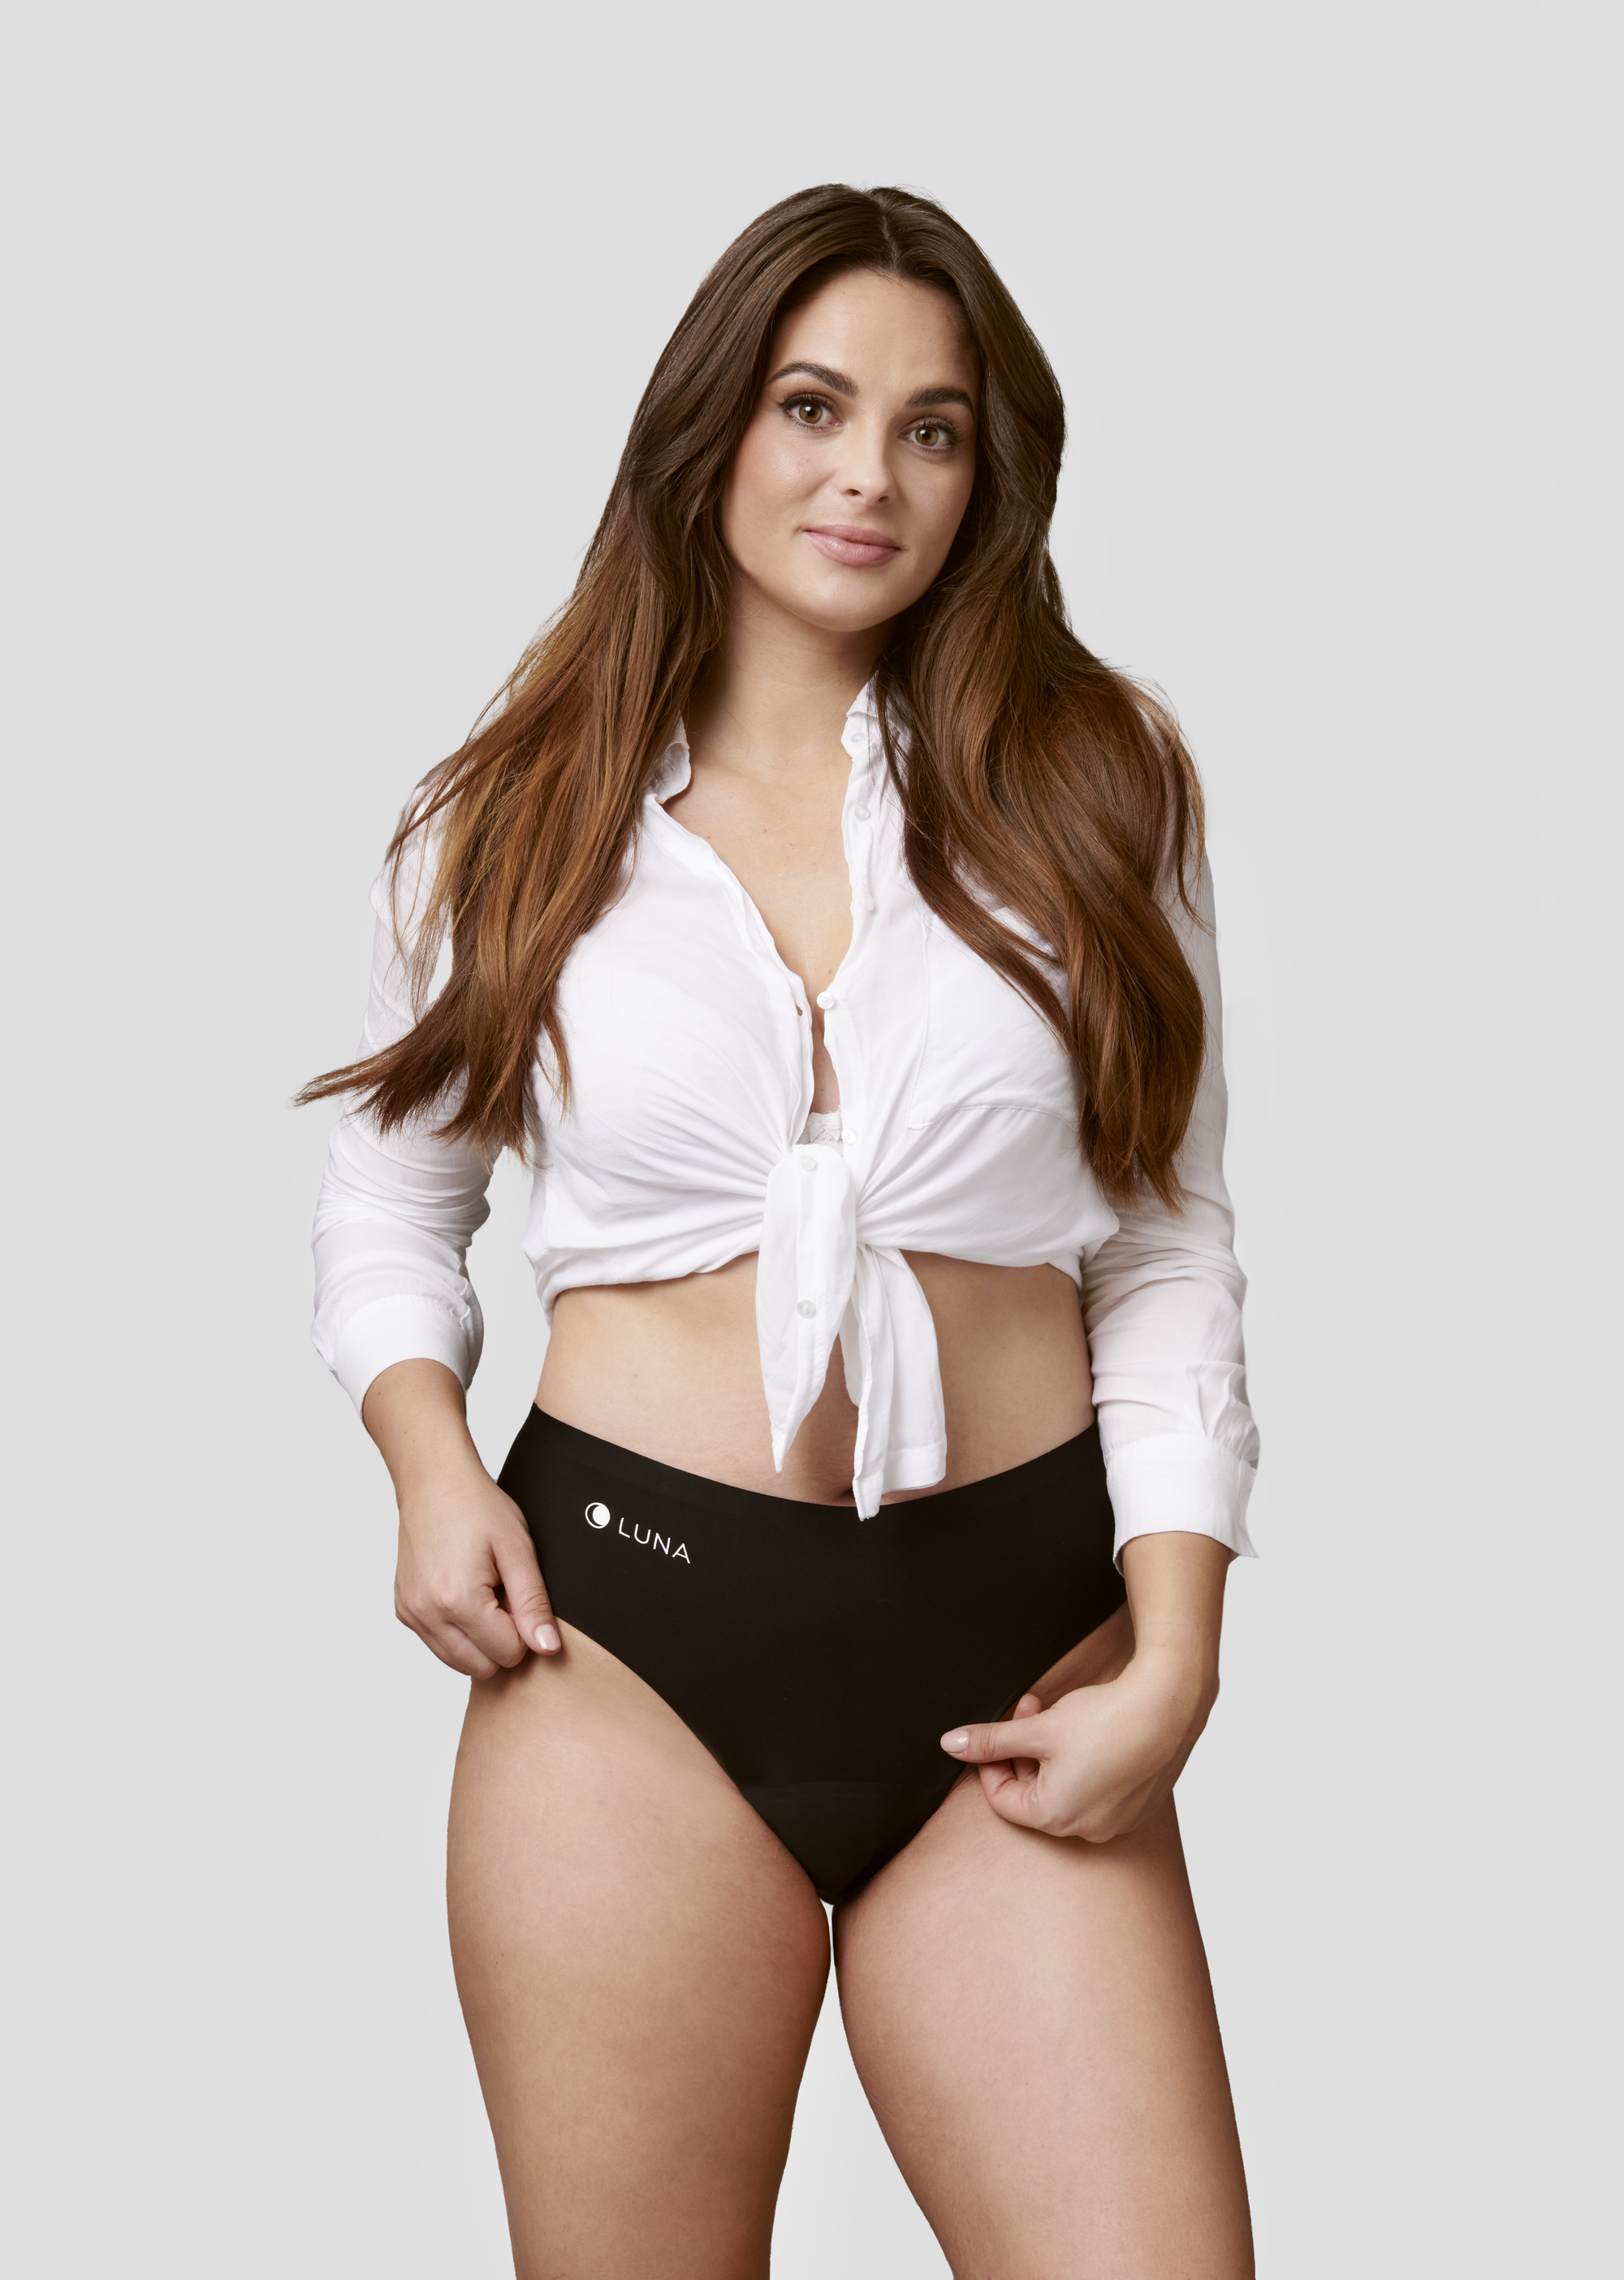 Model v majici z menstrualnimi hlačkami LUNA+ v črni barvi